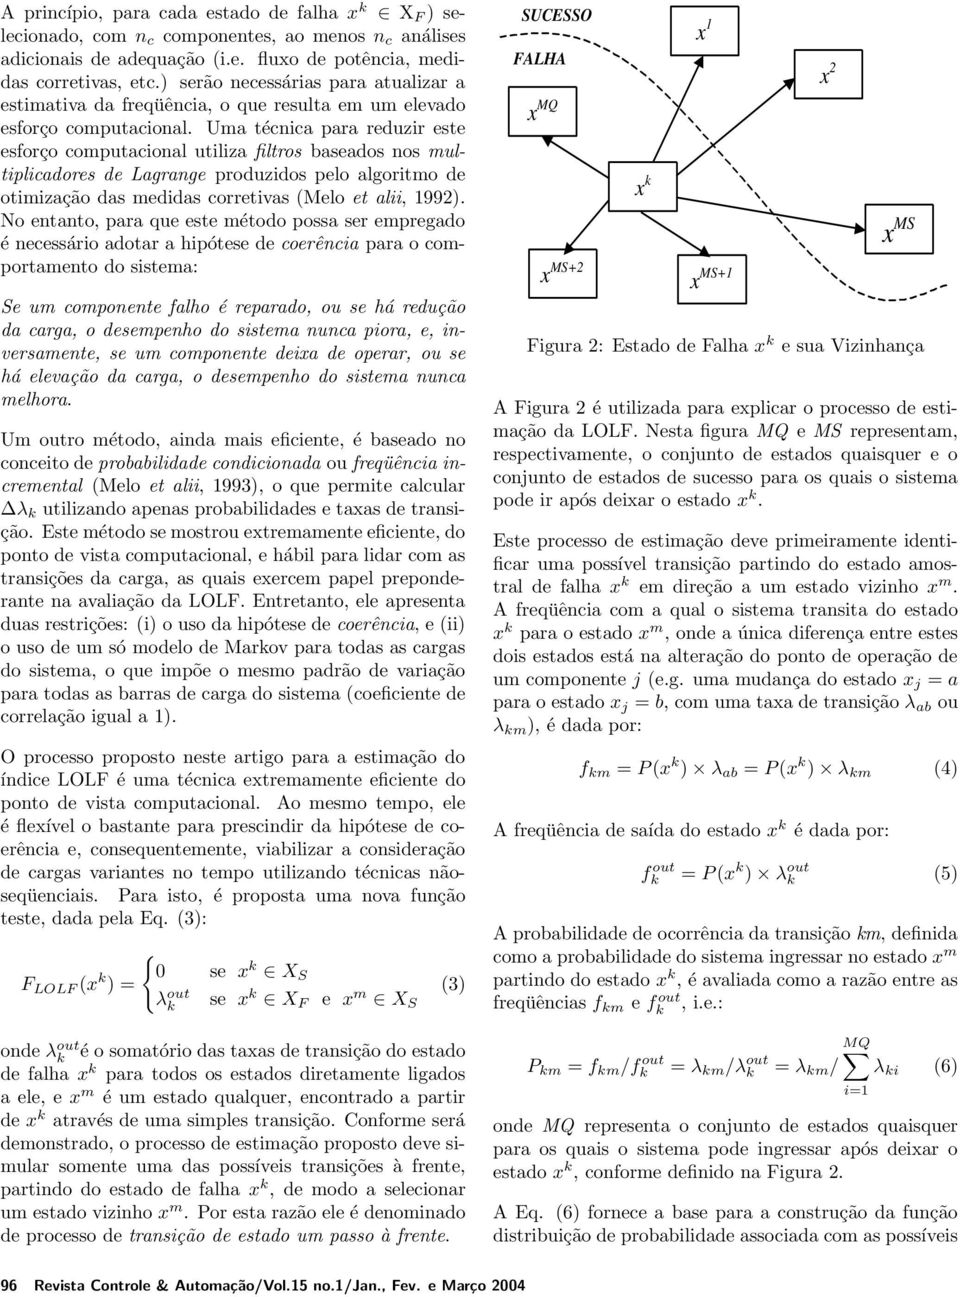 Uma técnica para reduzir este esforço computacional utiliza filtros baseados nos multiplicadores de Lagrange produzidos pelo algoritmo de otimização das medidas corretivas (Melo et alii, 1992).